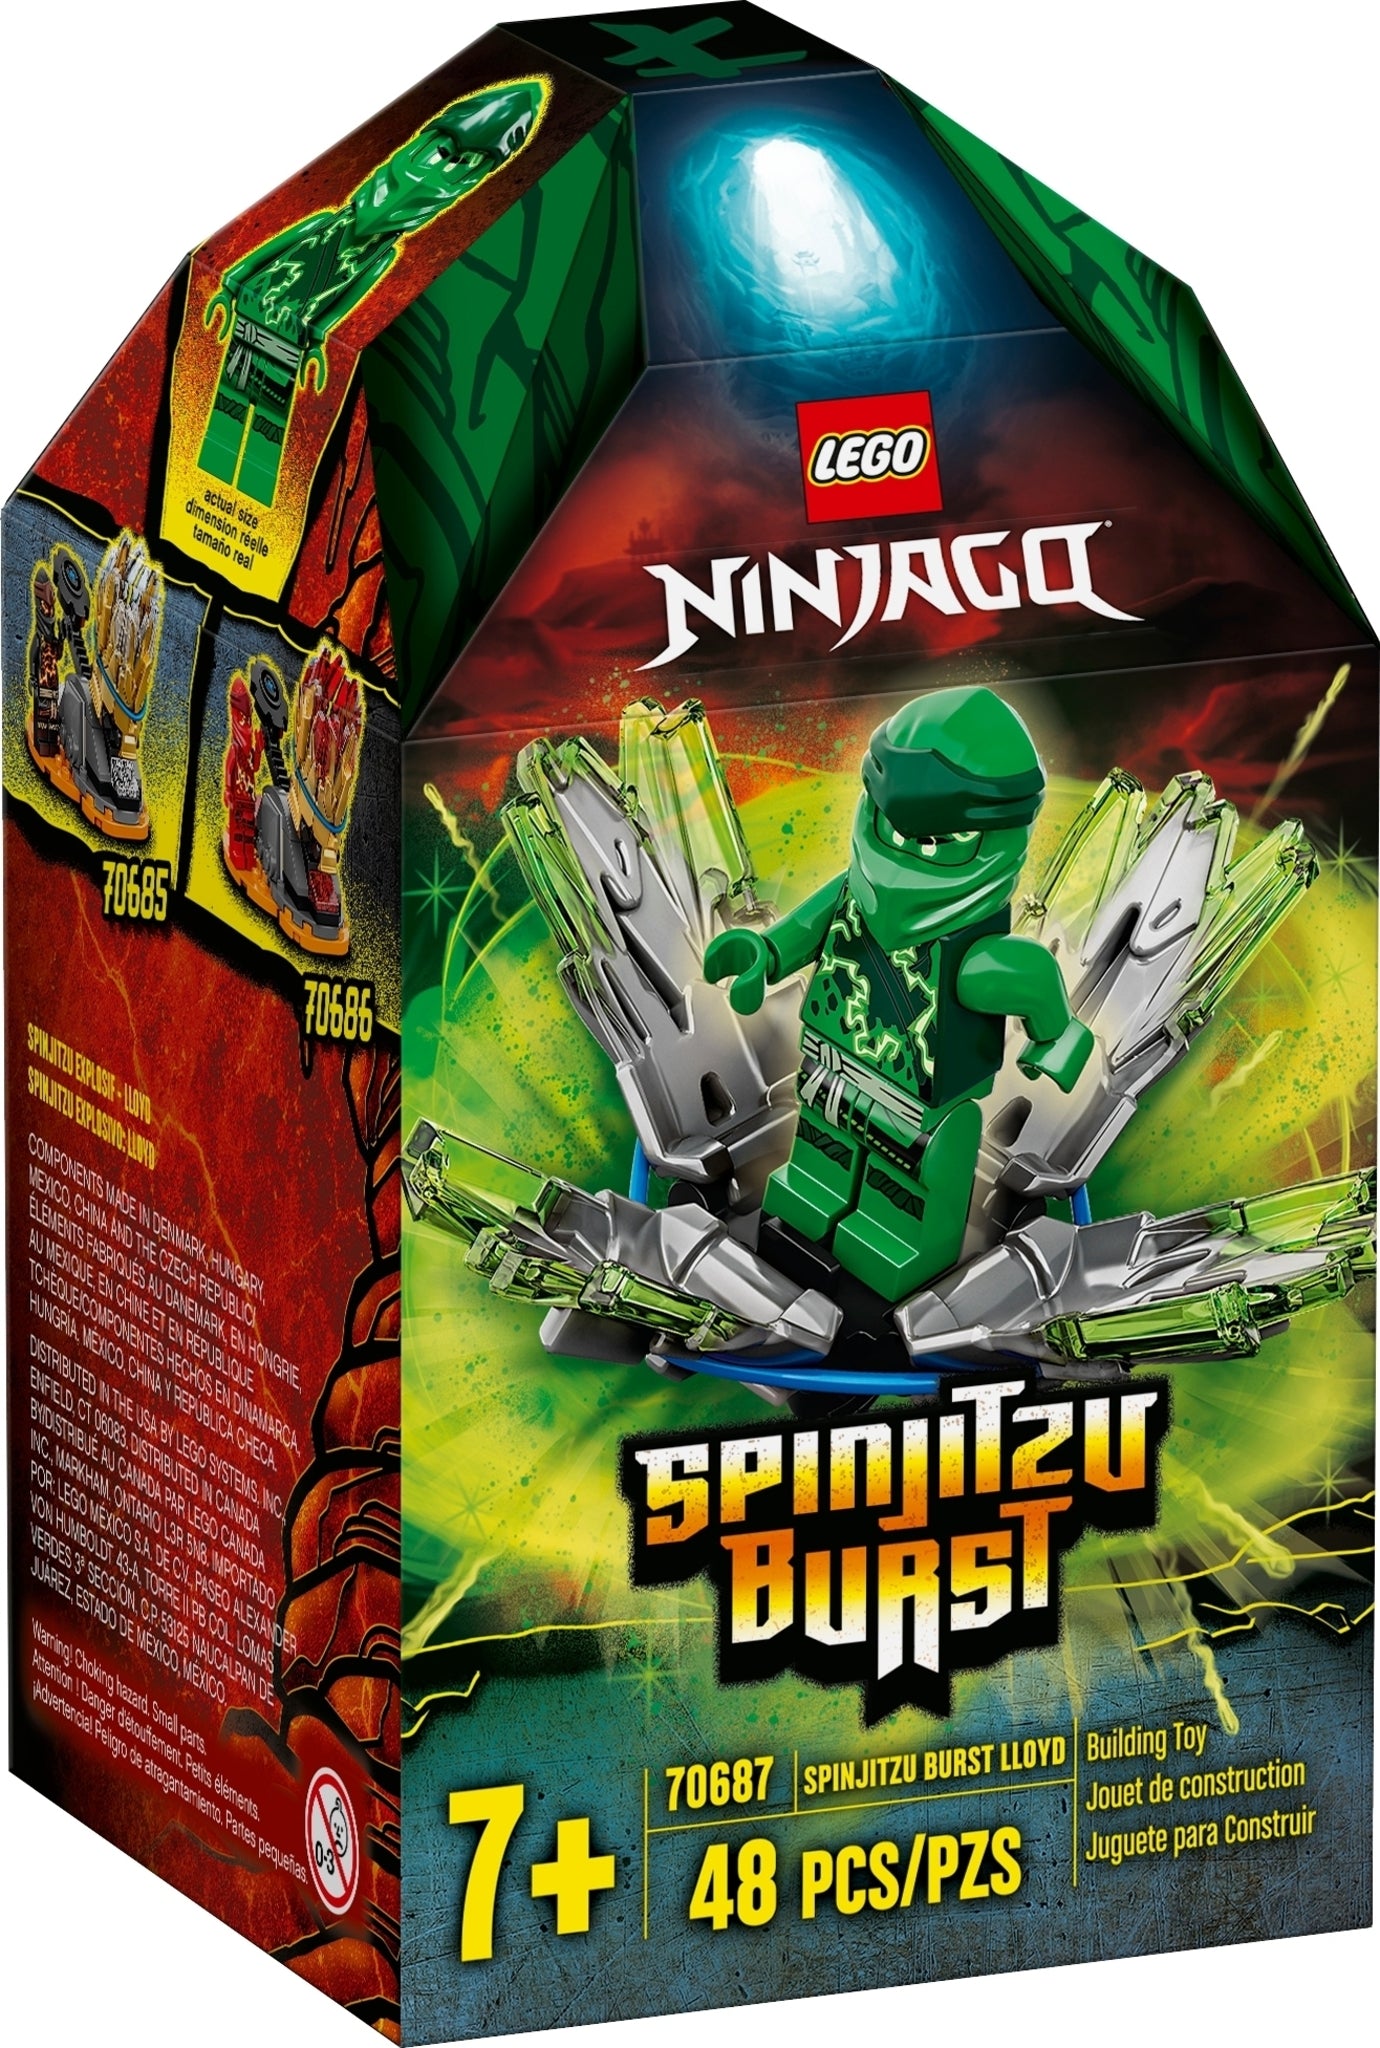 70687 LEGO Ninjago - Spinjitzu Burst Lloyd